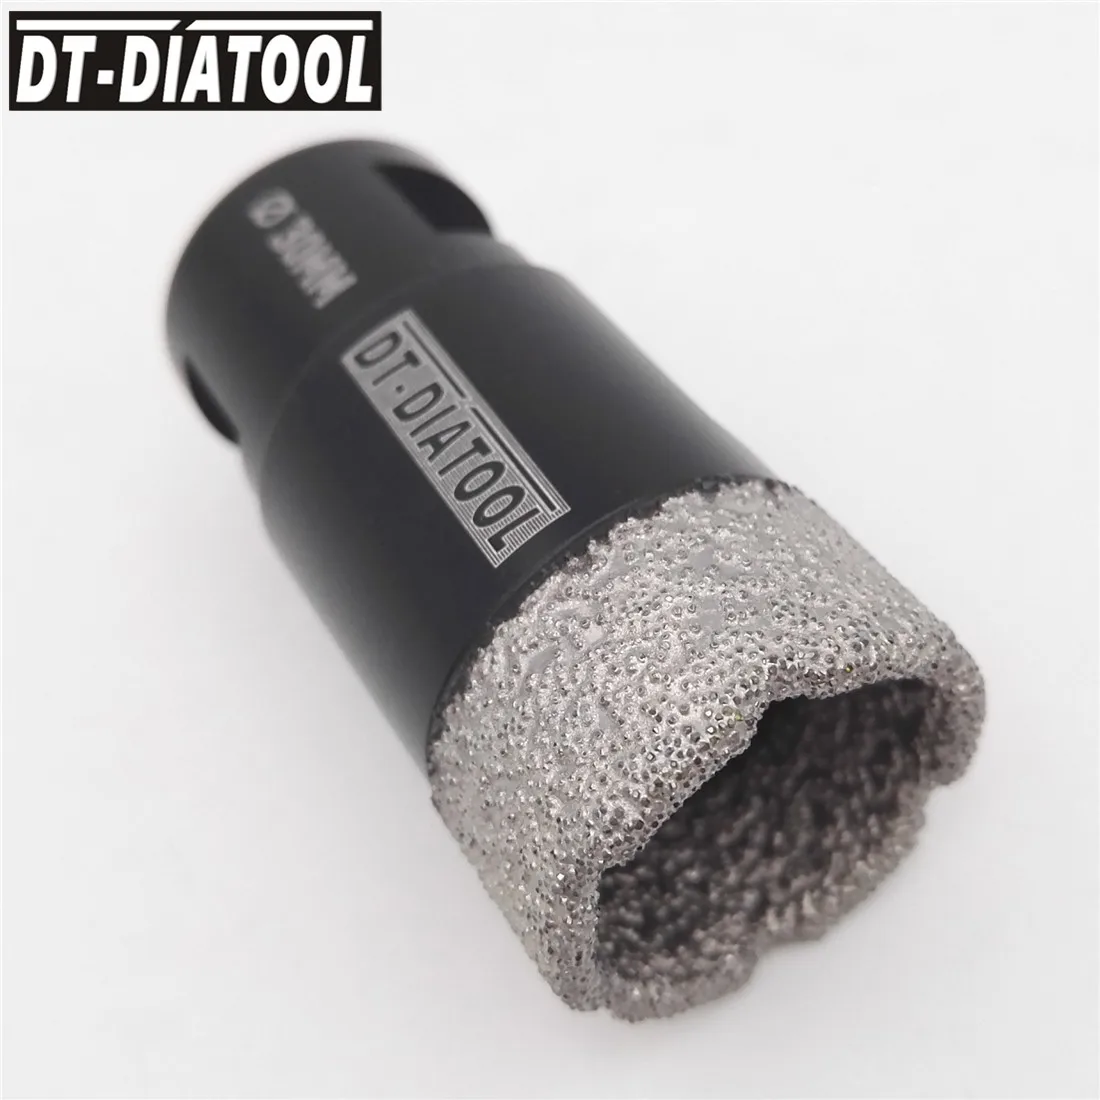 DT-DIATOOL 2 шт. 30 мм сверла сухие вакуумные пайки Алмазные сверла коронки для мрамора гранита плитка отверстие пилы с резьбой M14 от AliExpress RU&CIS NEW